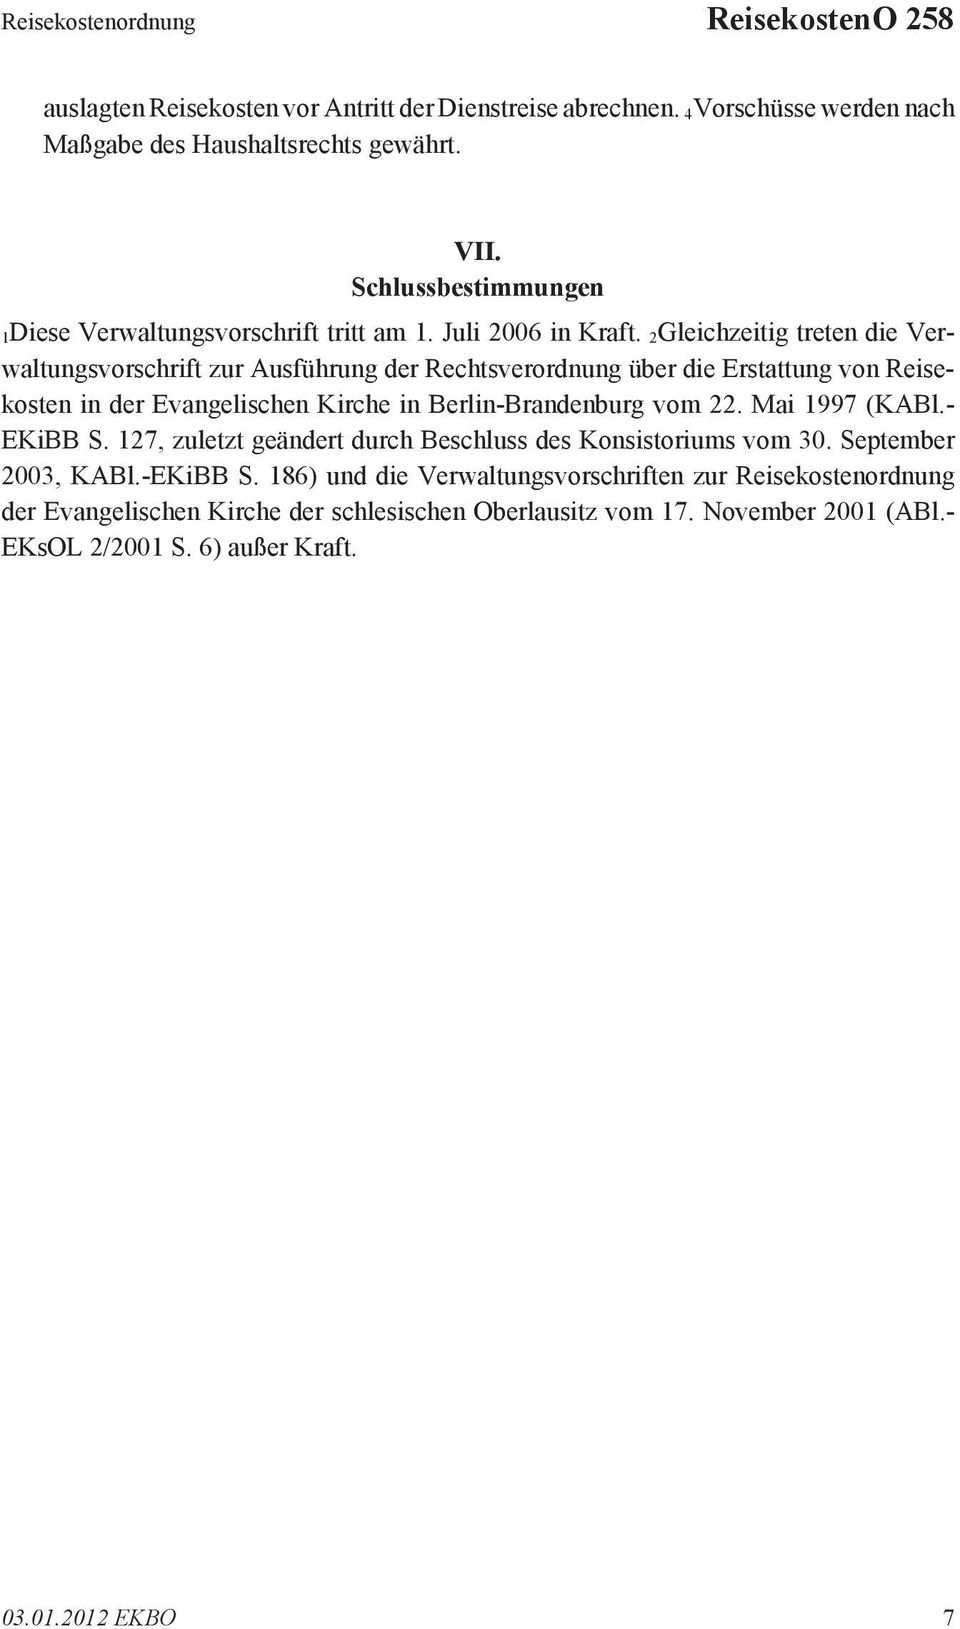 2Gleichzeitig treten die Verwaltungsvorschrift zur Ausführung der Rechtsverordnung über die Erstattung von Reisekosten in der Evangelischen Kirche in Berlin-Brandenburg vom 22.